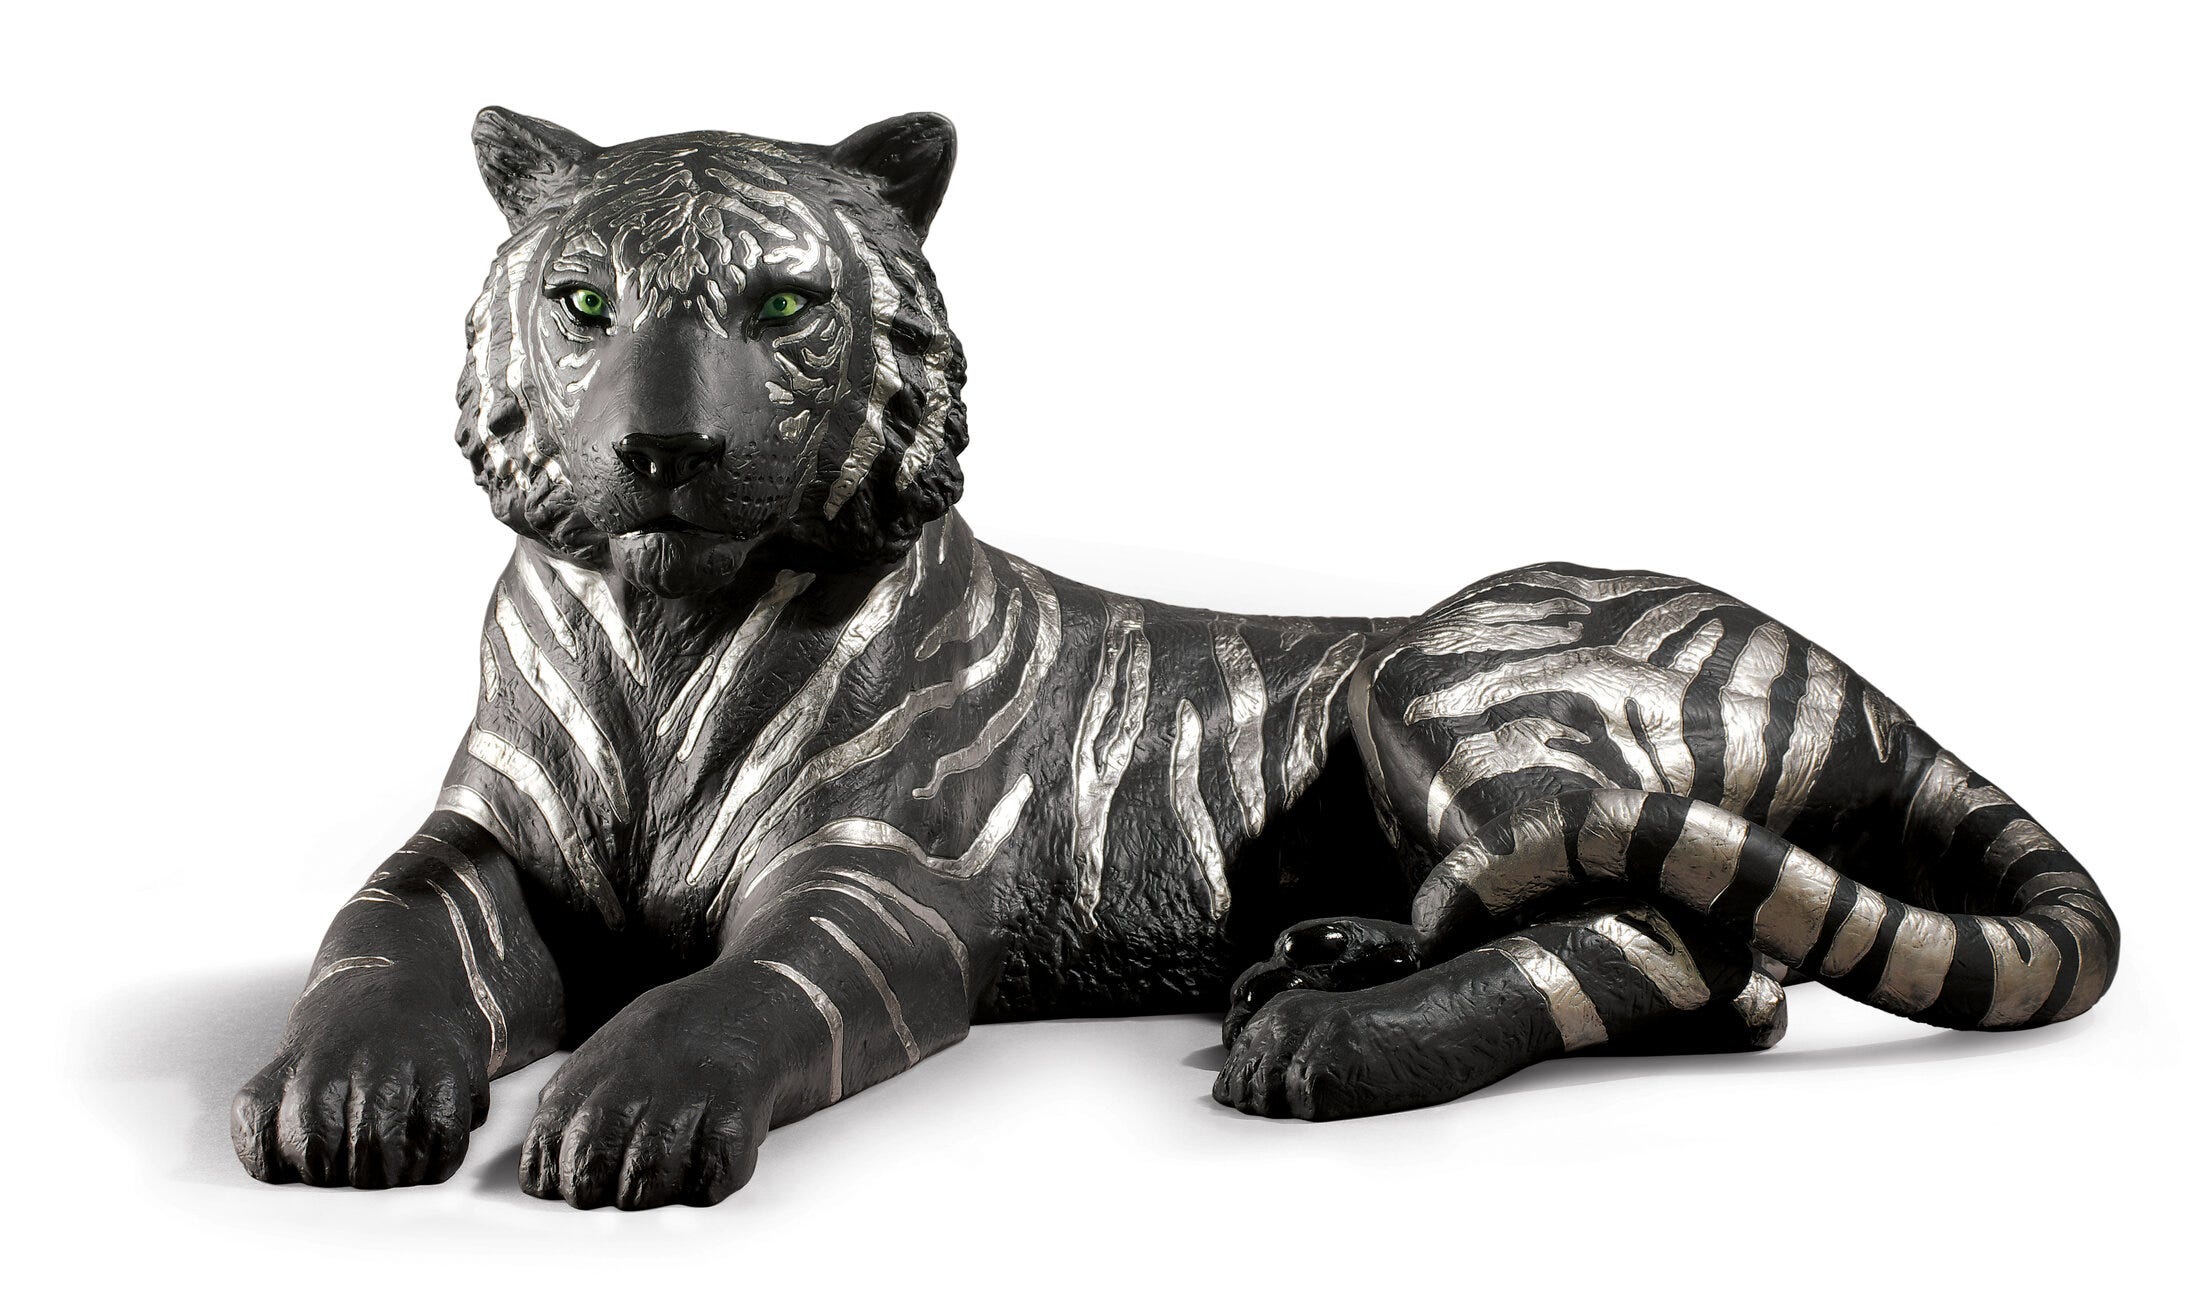 Figurina di tigre. Lustro argento e nero